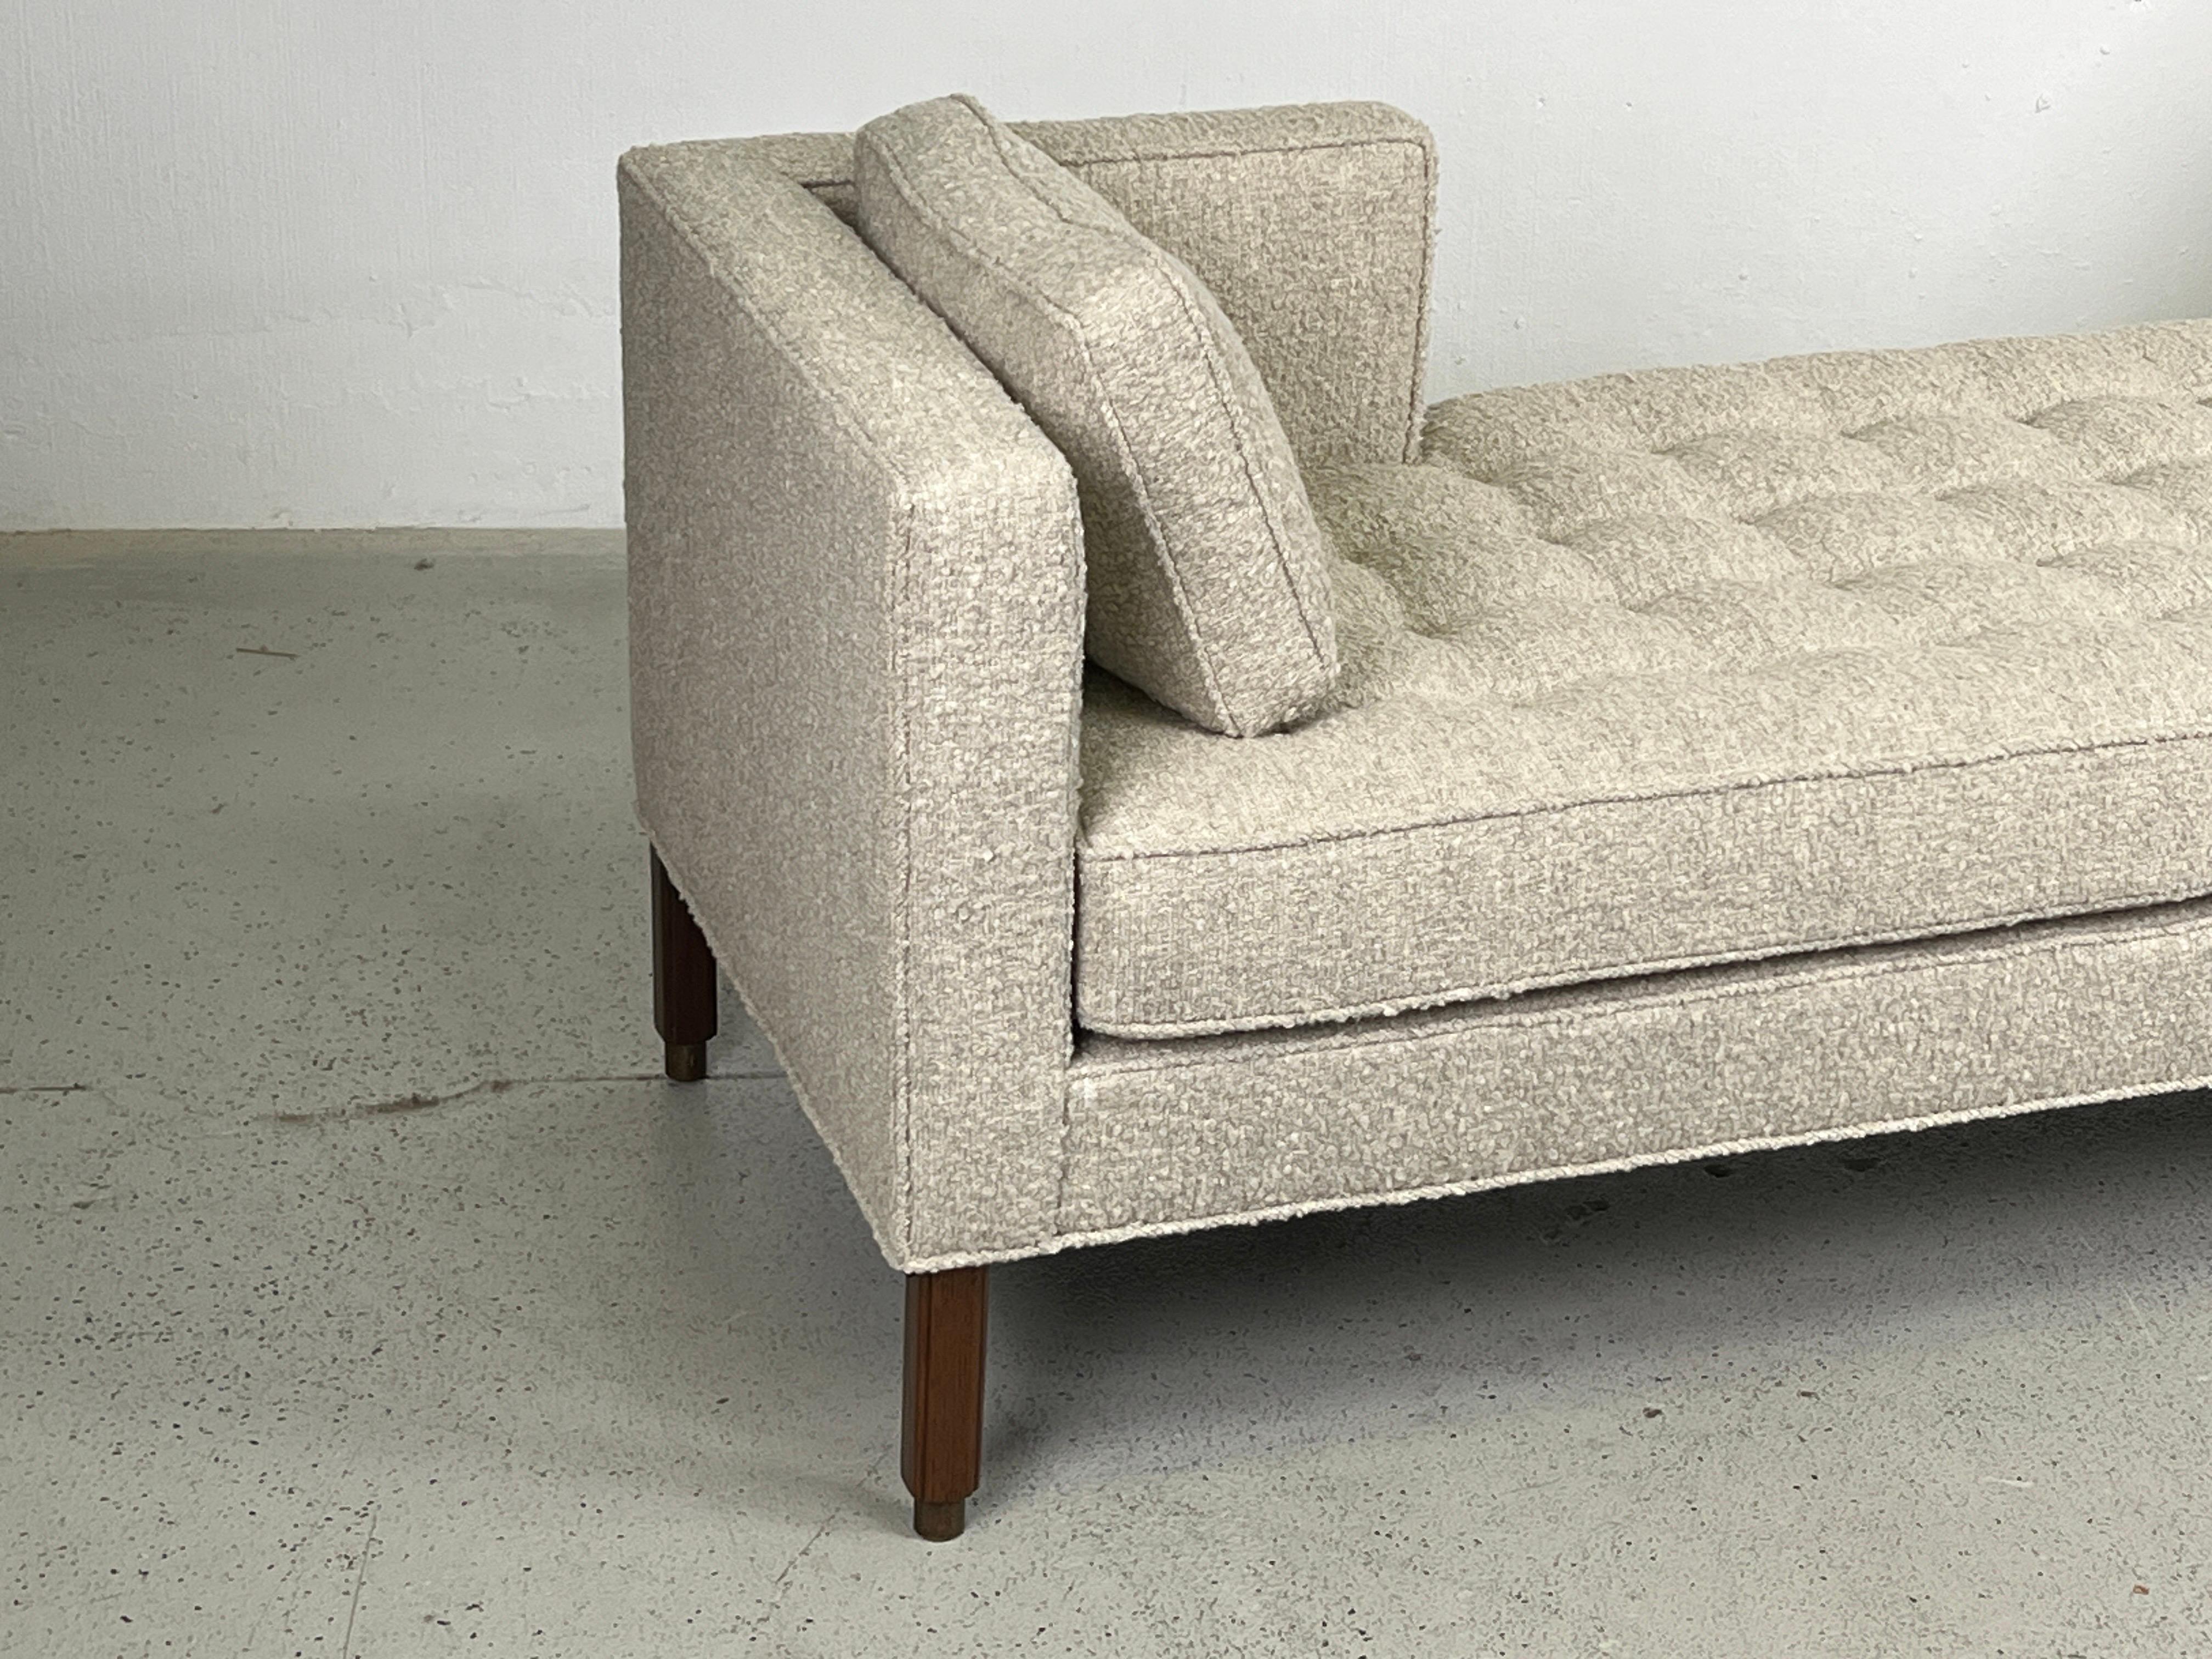 Tete-a-Tete-Sofa/Tagesbett mit Nussbaumsockel und Messingfüßen. Neu gepolstert in Holly HUNT / Teton / Cliffside Stoff. Entworfen von Edward Wormley für Dunbar.